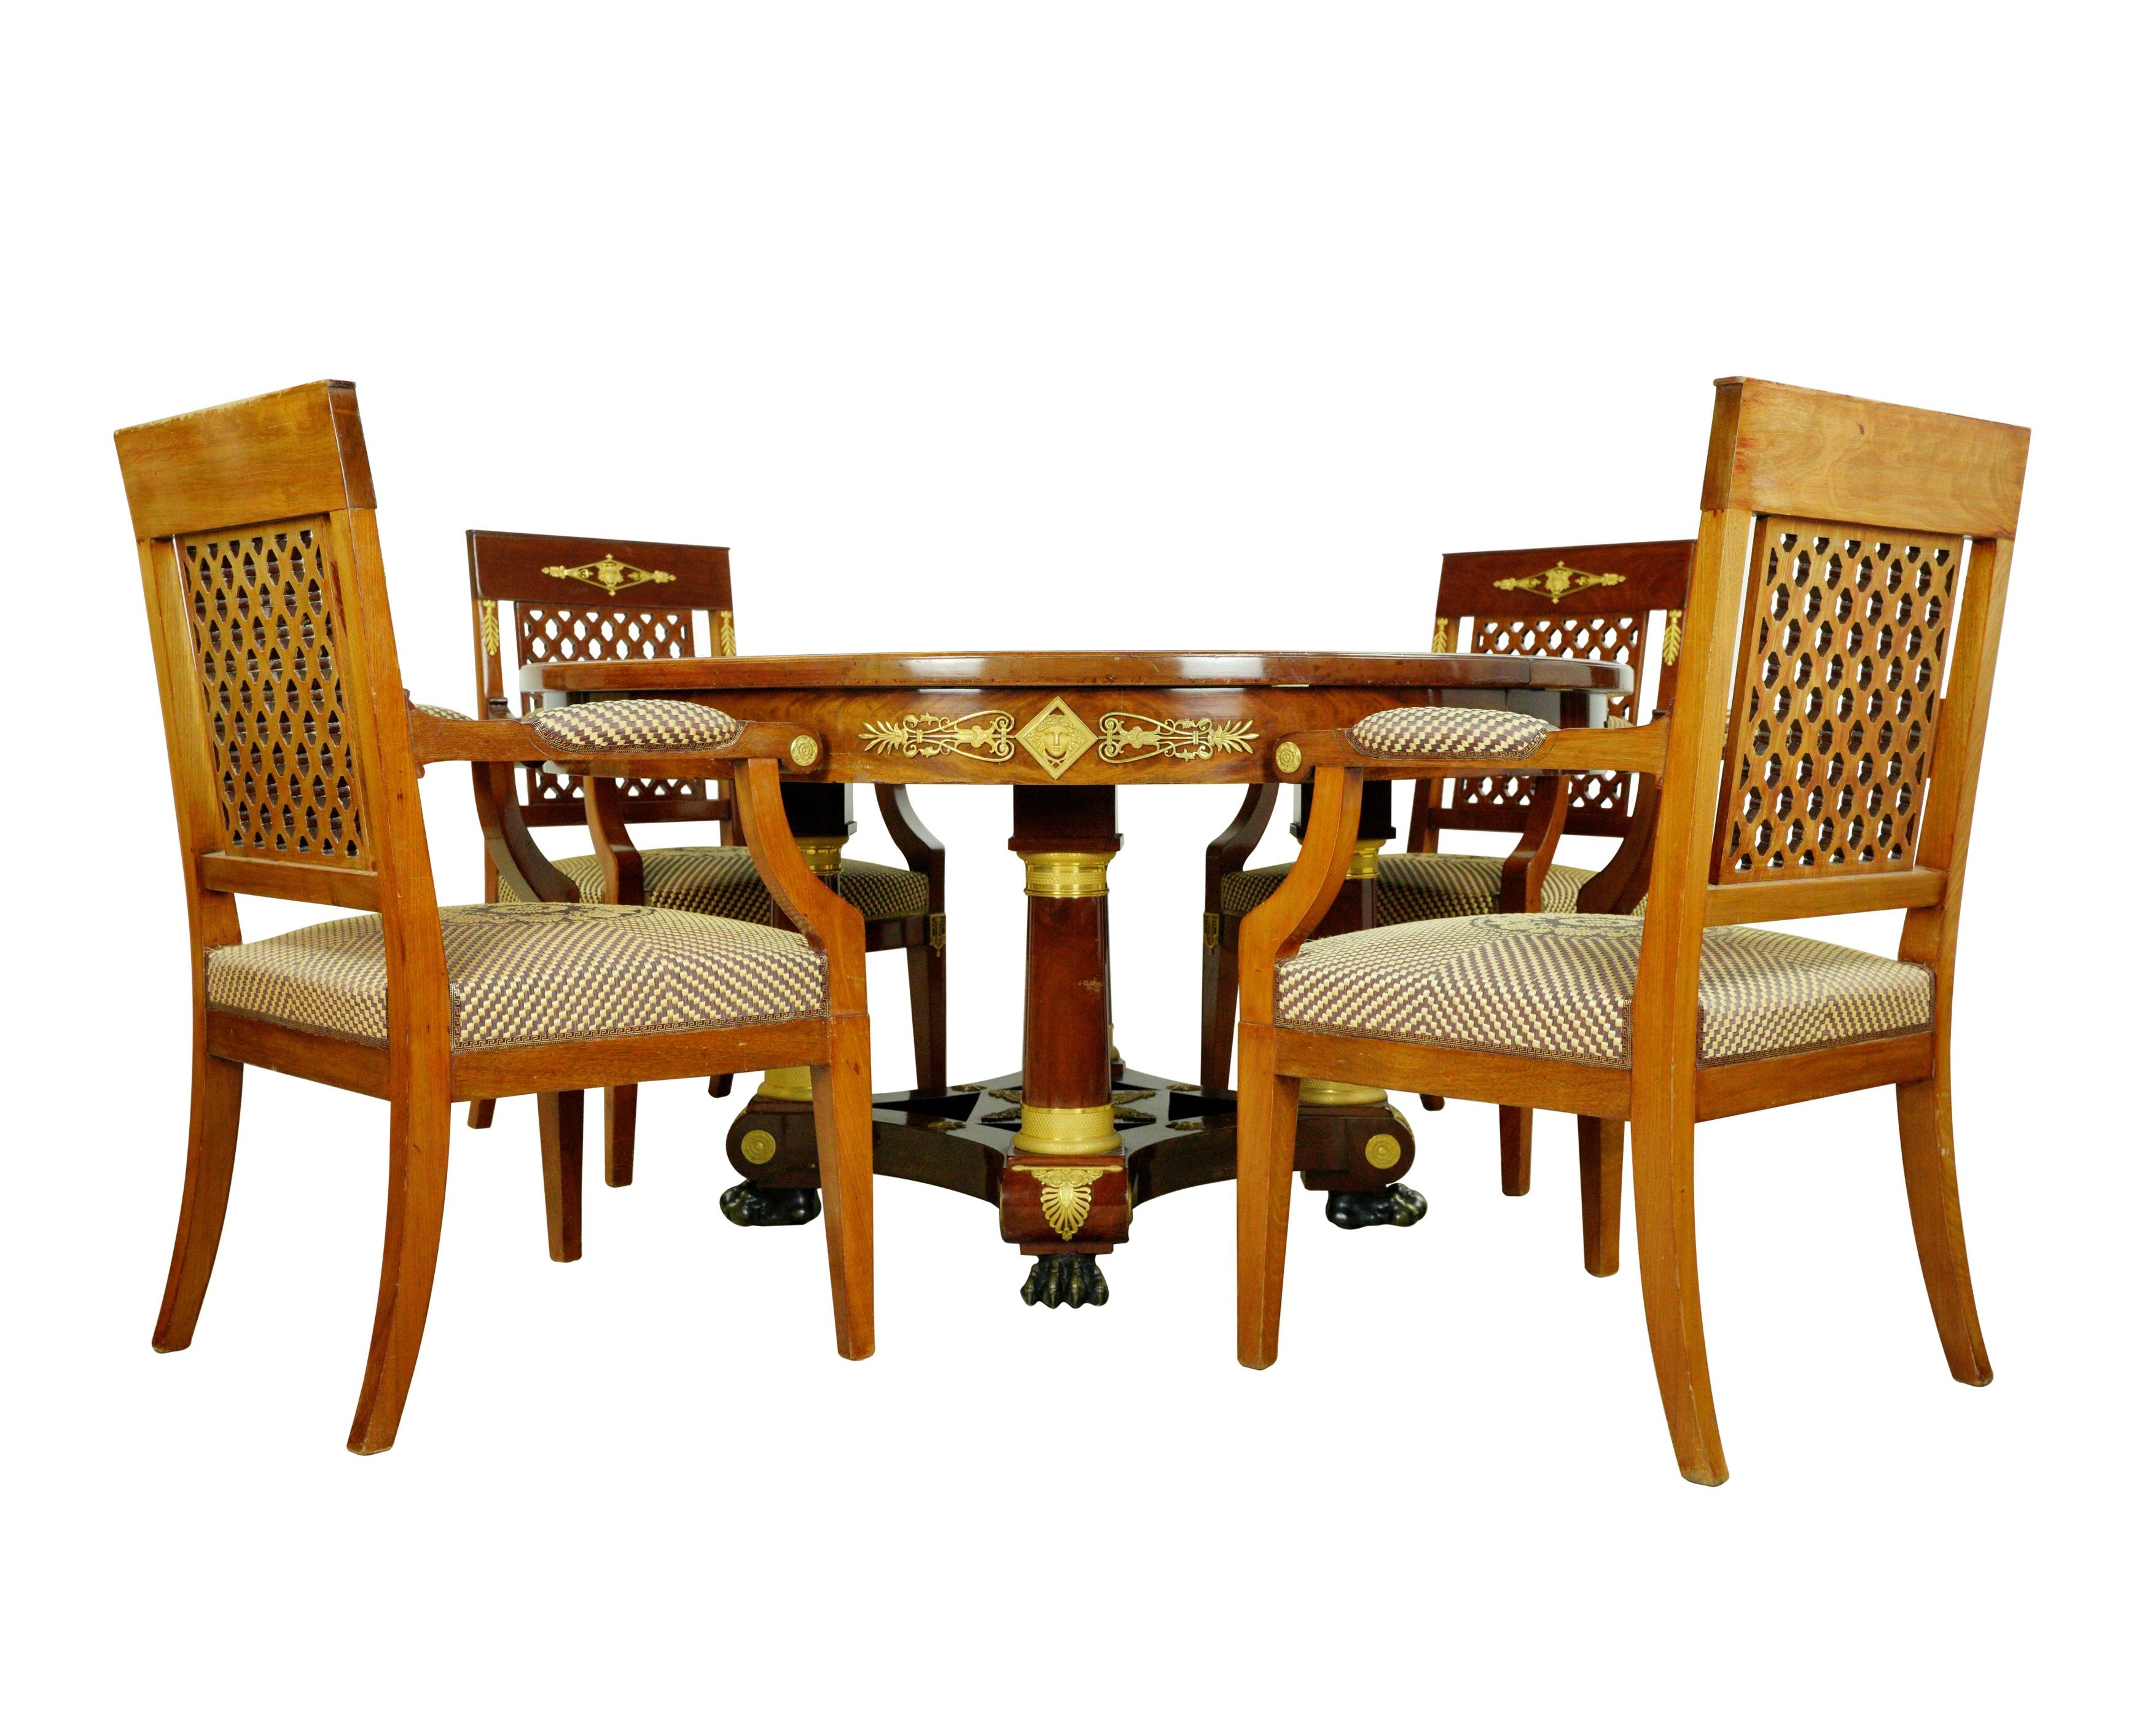 Cet ensemble de meubles exquis provient d'une propriété de Greenwich, Connecticut. L'ensemble comprend une table avec quatre allonges et un total de douze chaises, huit sans accoudoirs et quatre avec accoudoirs. Les chaises, fabriquées en bois de